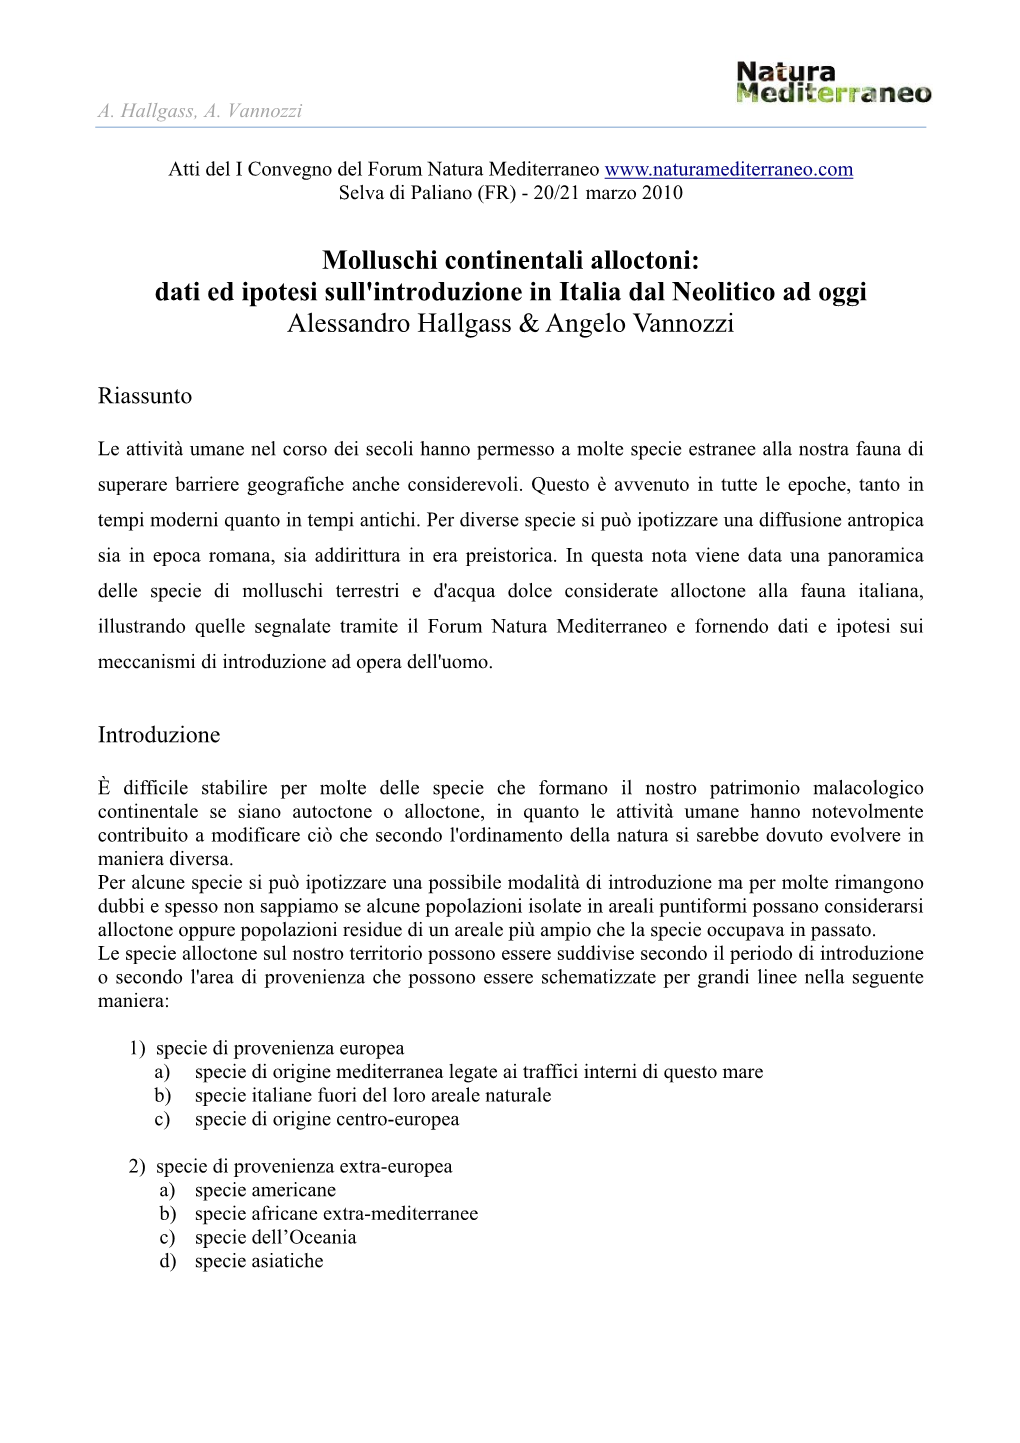 Molluschi Continentali Alloctoni: Dati Ed Ipotesi Sull'introduzione in Italia Dal Neolitico Ad Oggi Alessandro Hallgass & Angelo Vannozzi